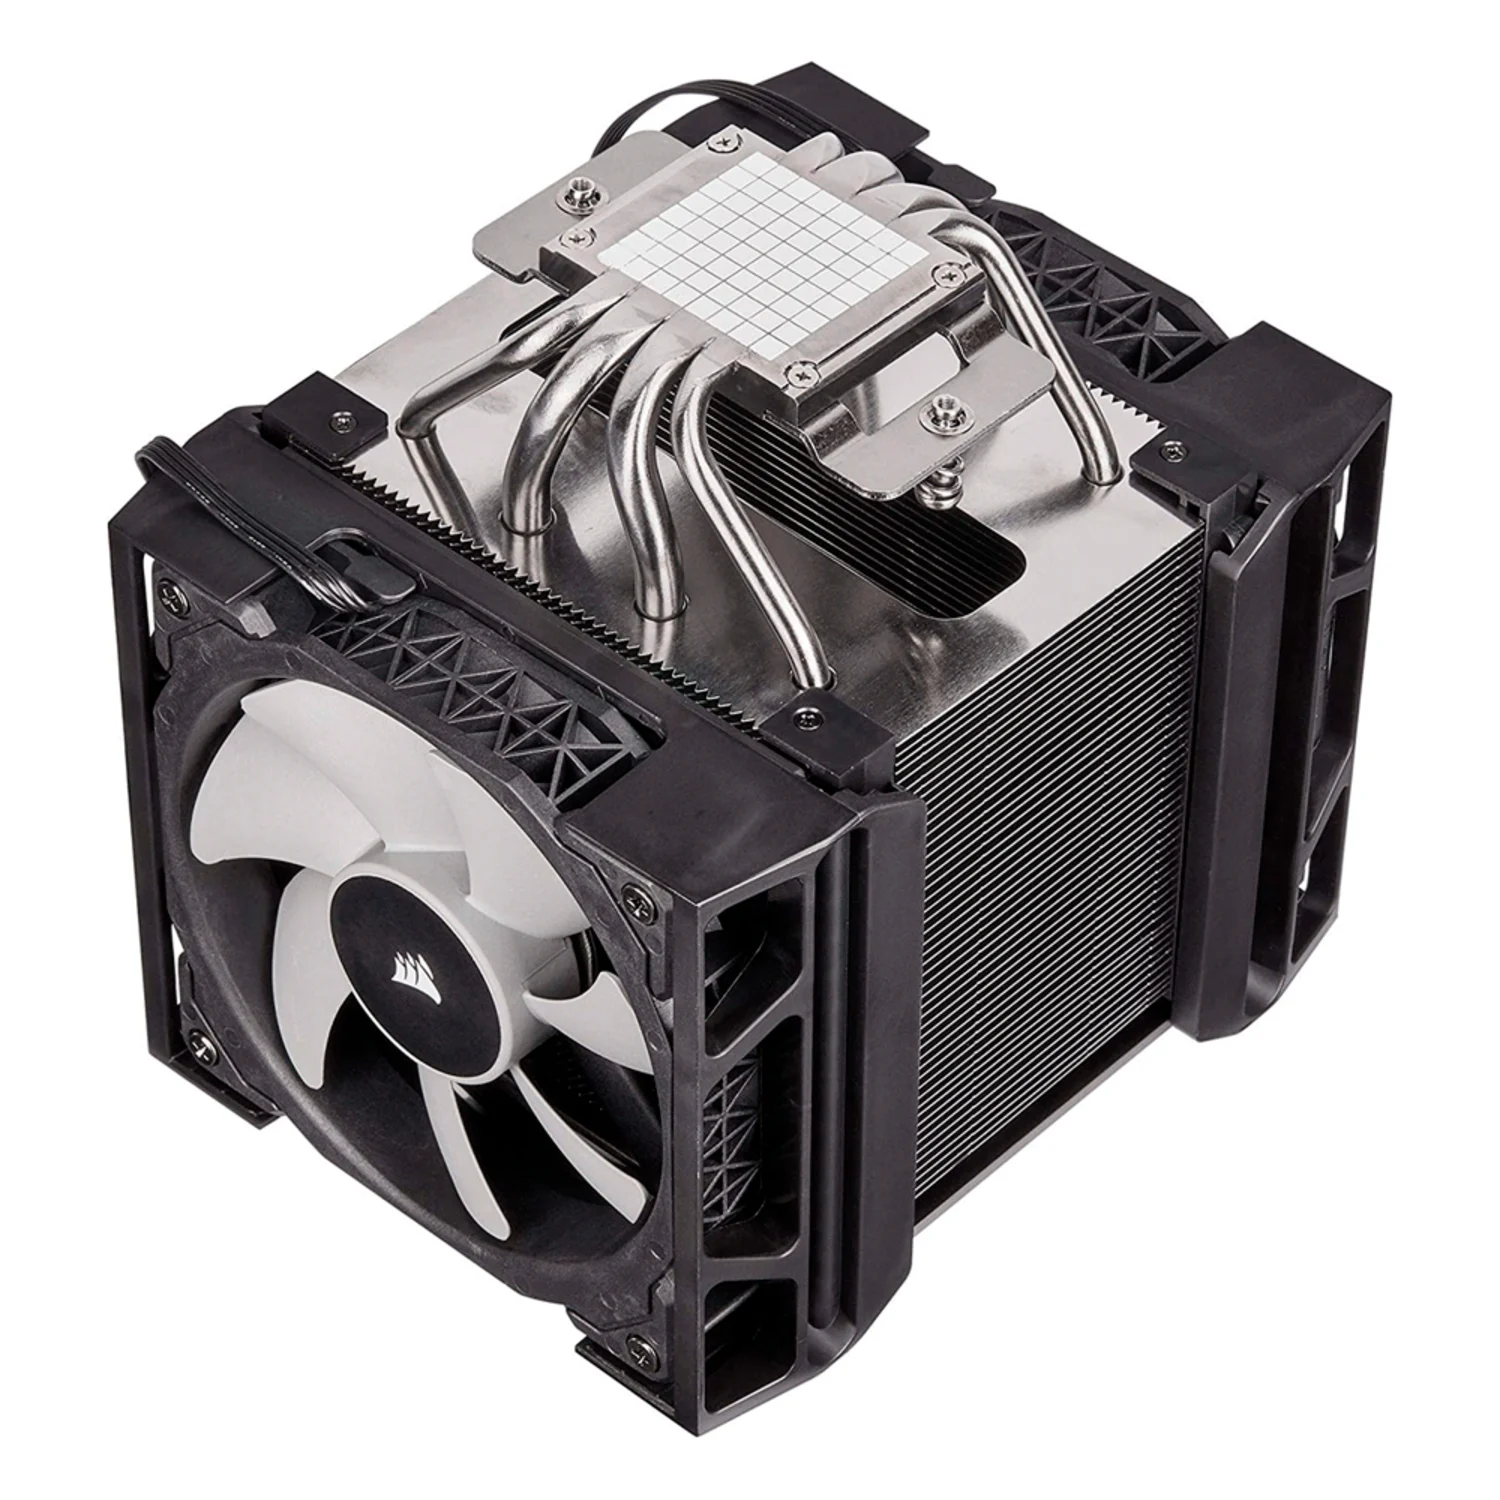 Cooler para Processador Corsair A500 CT-9010003-WW Dual Fan - Preto (Caixa Danificada)